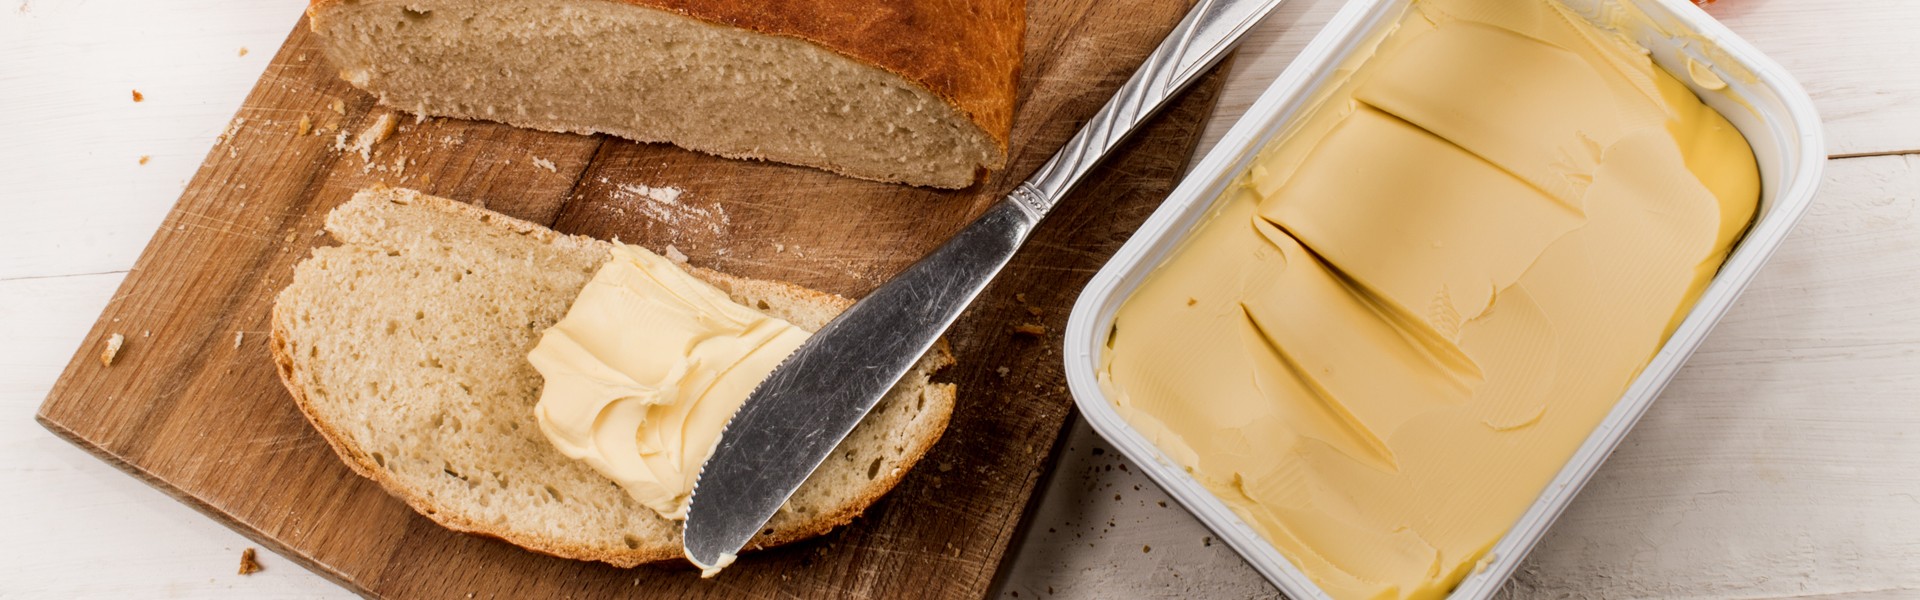  domaci peceni kruh s margarinom i nozem na dasci za rezanje